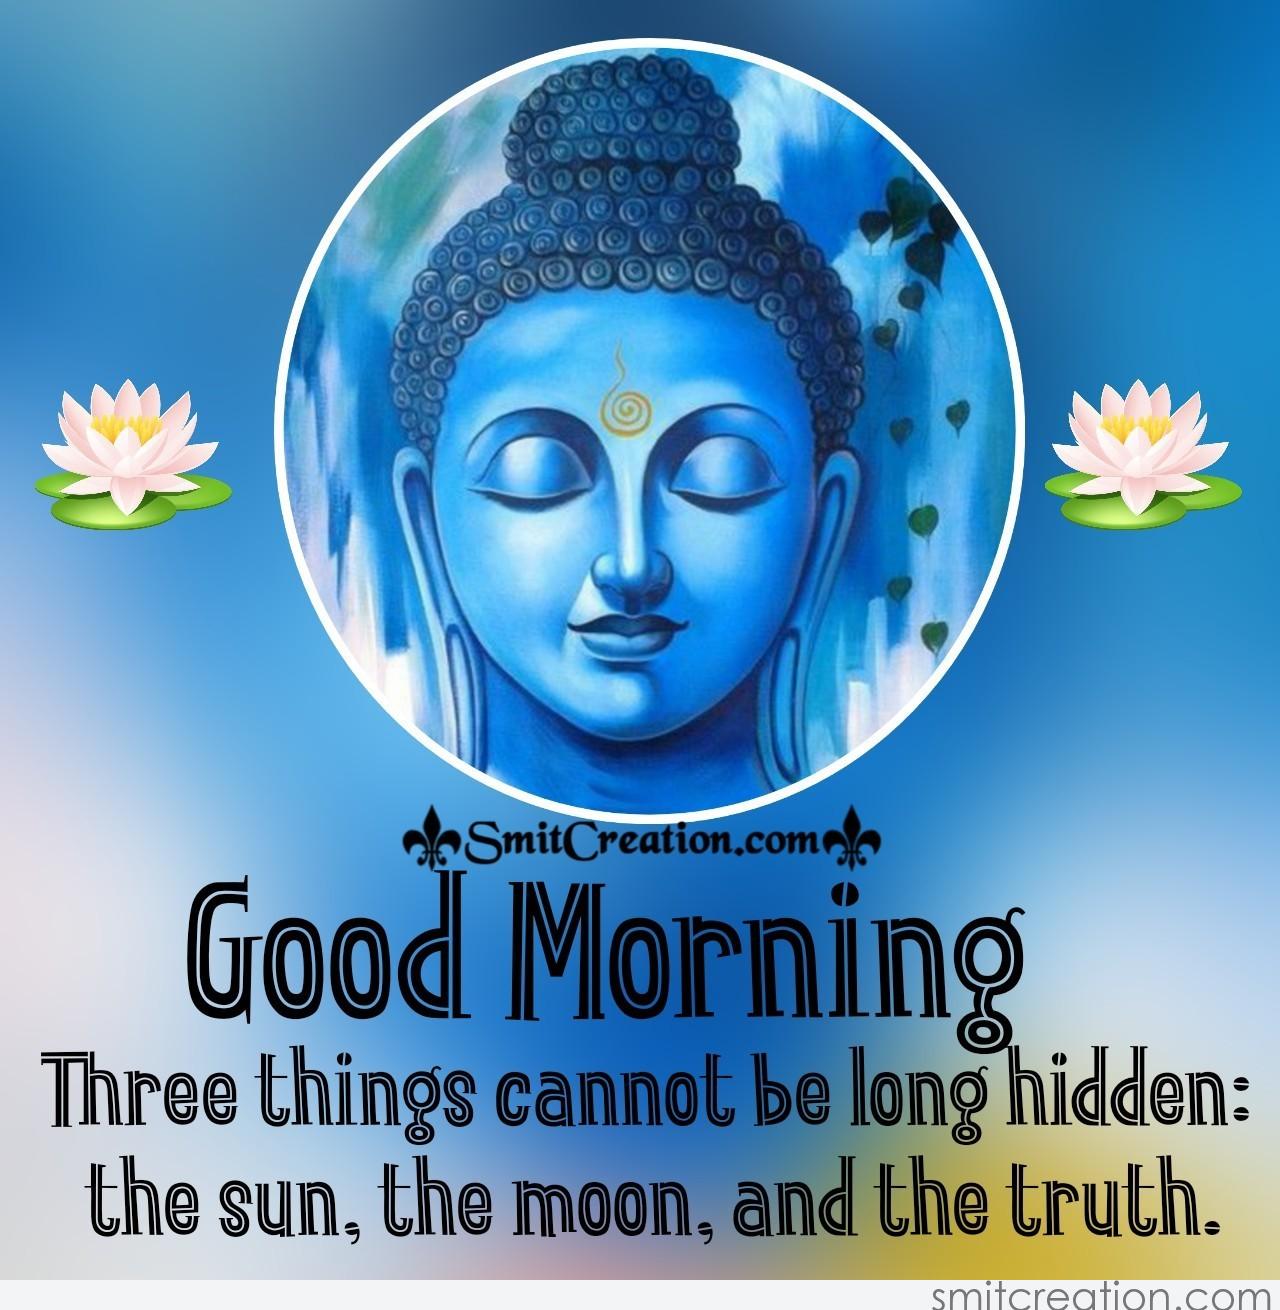 Good Morning Buddha Images - SmitCreation.com